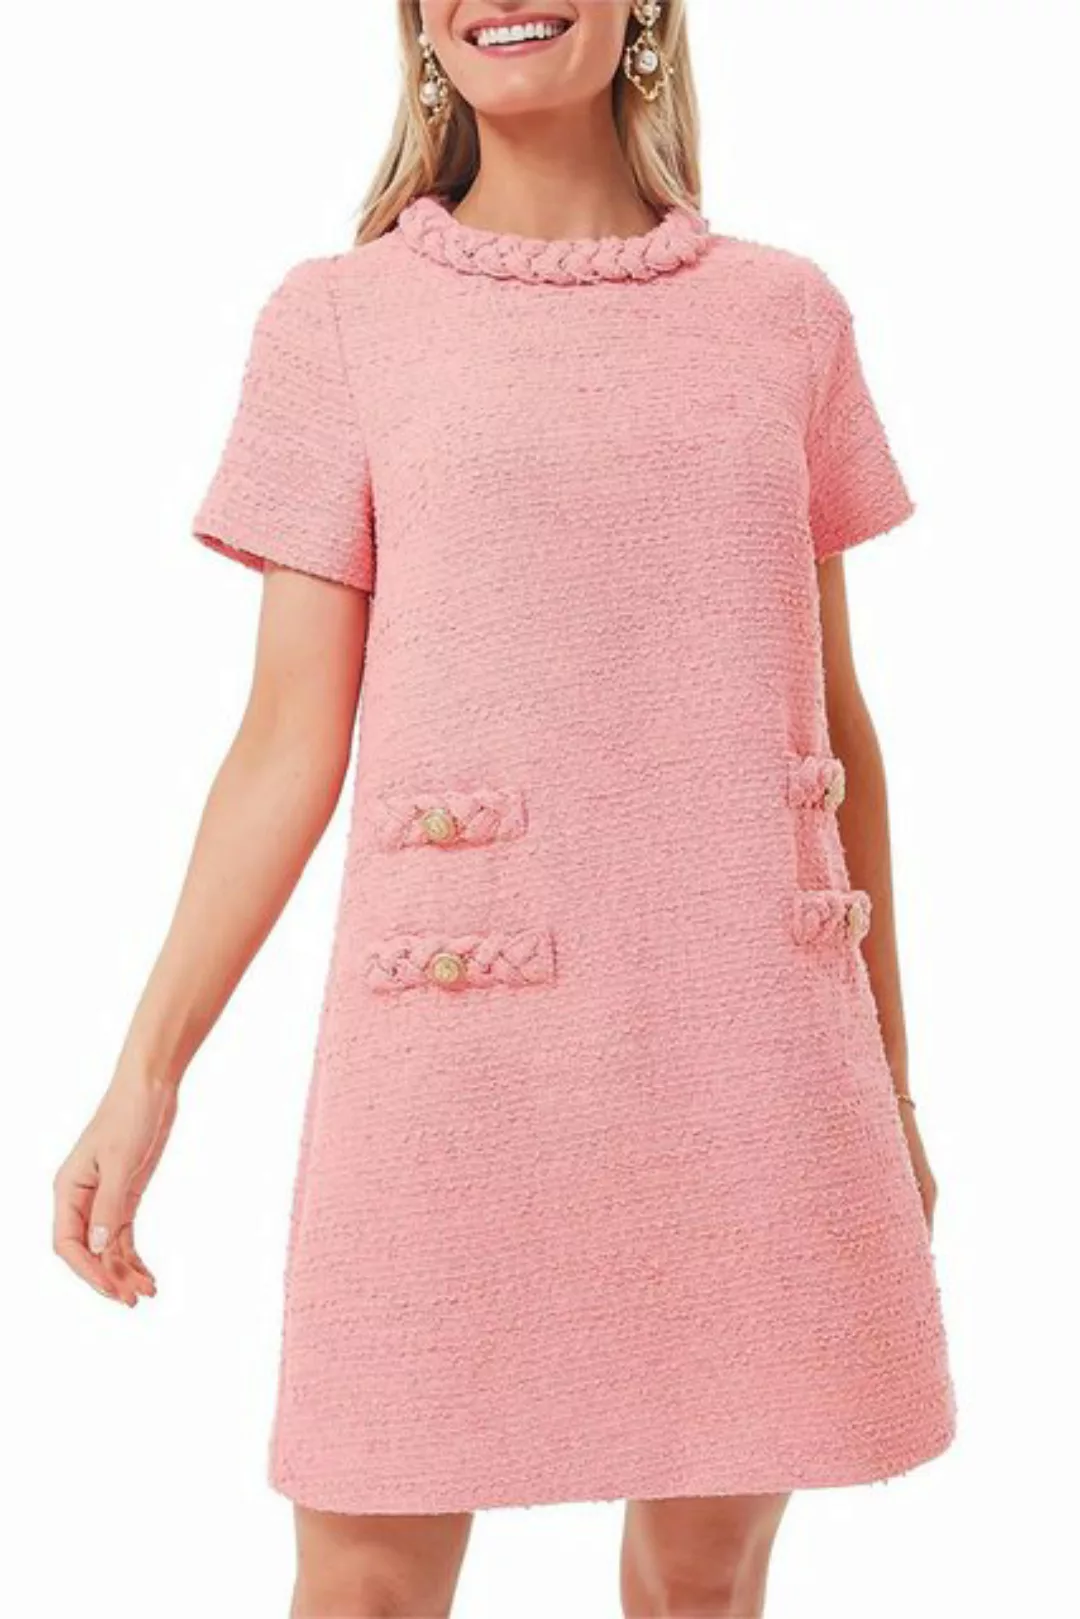 JDMGZSR Sommerkleid Damen Knopf Dekoration Party Kleider Tweed Kleid Strand günstig online kaufen